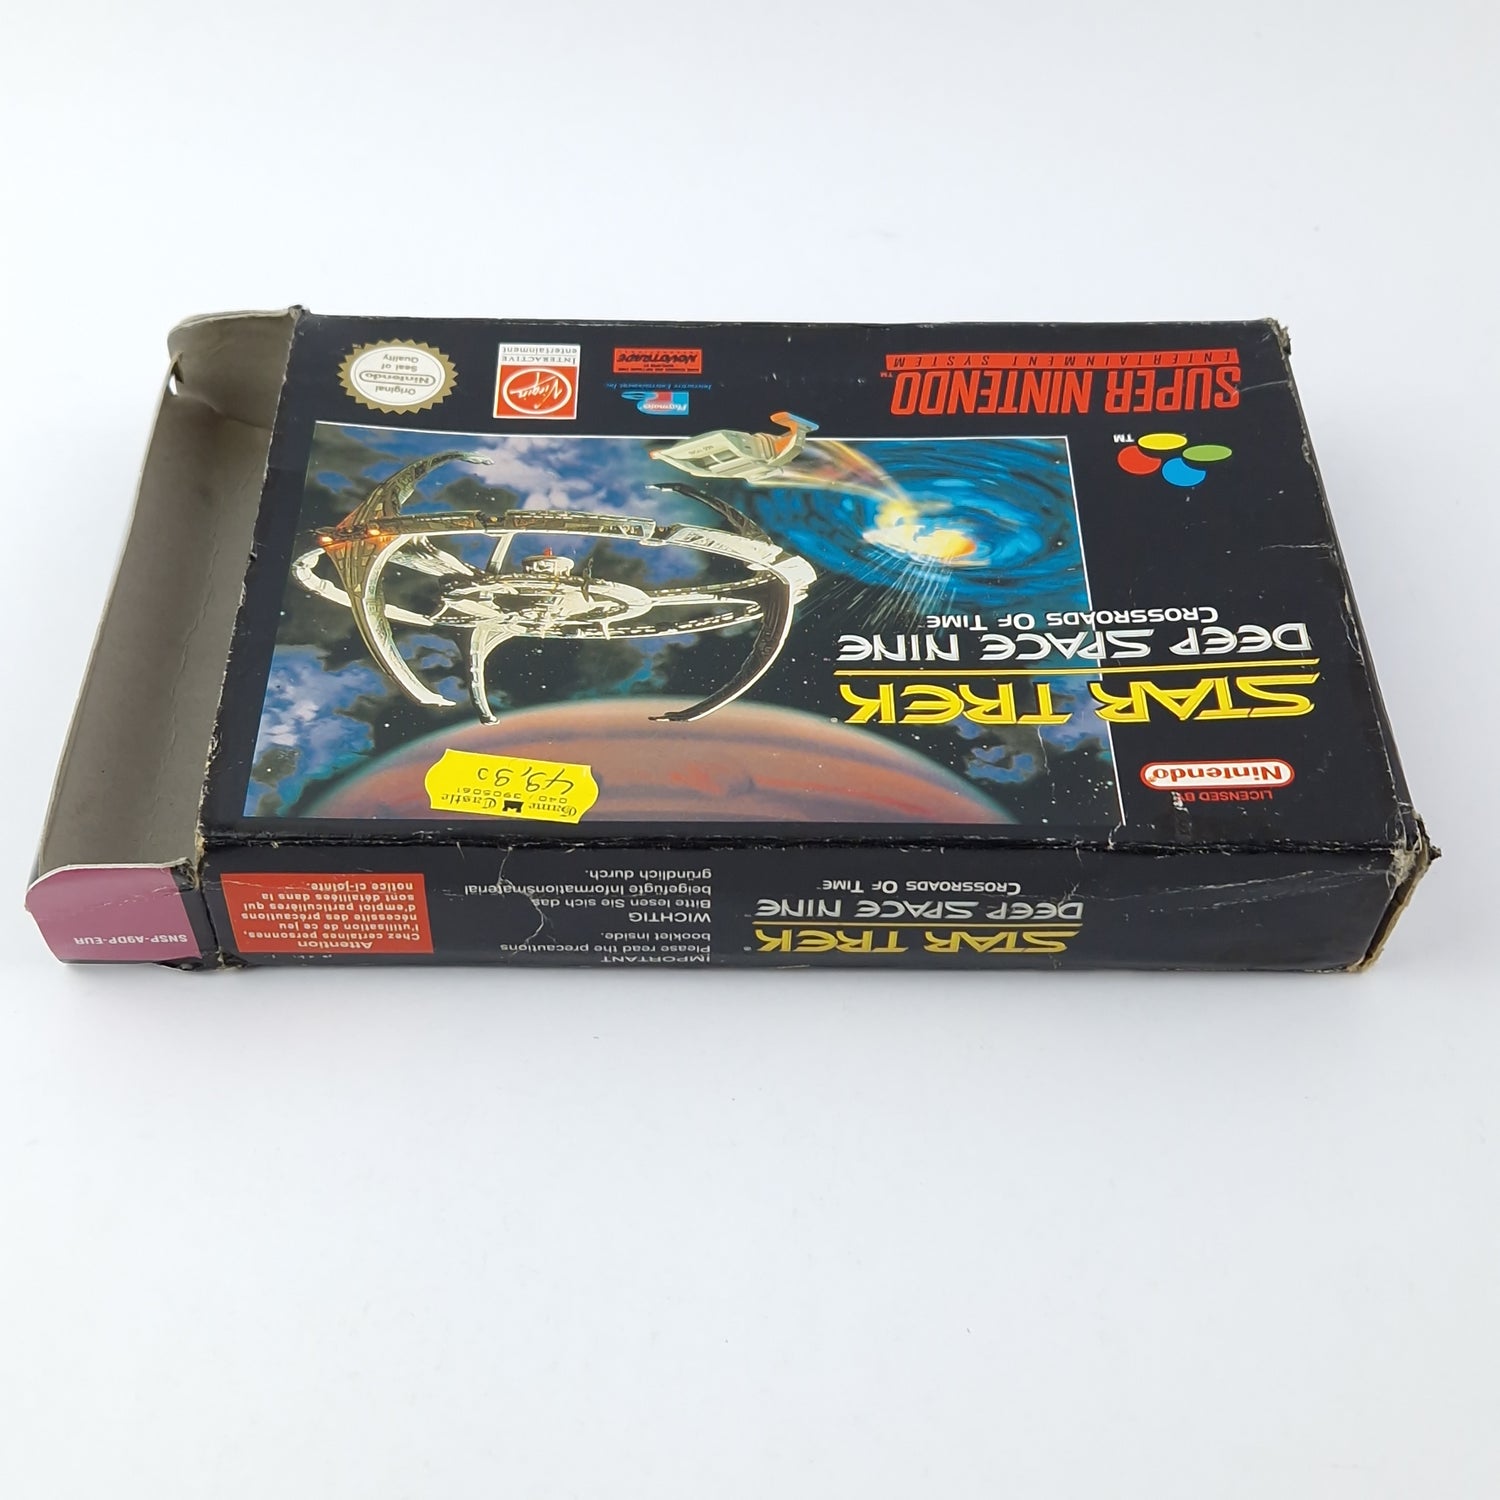 Super Nintendo Spiel : Star Trek Deep Space Nine - OVP Pal Game SNES